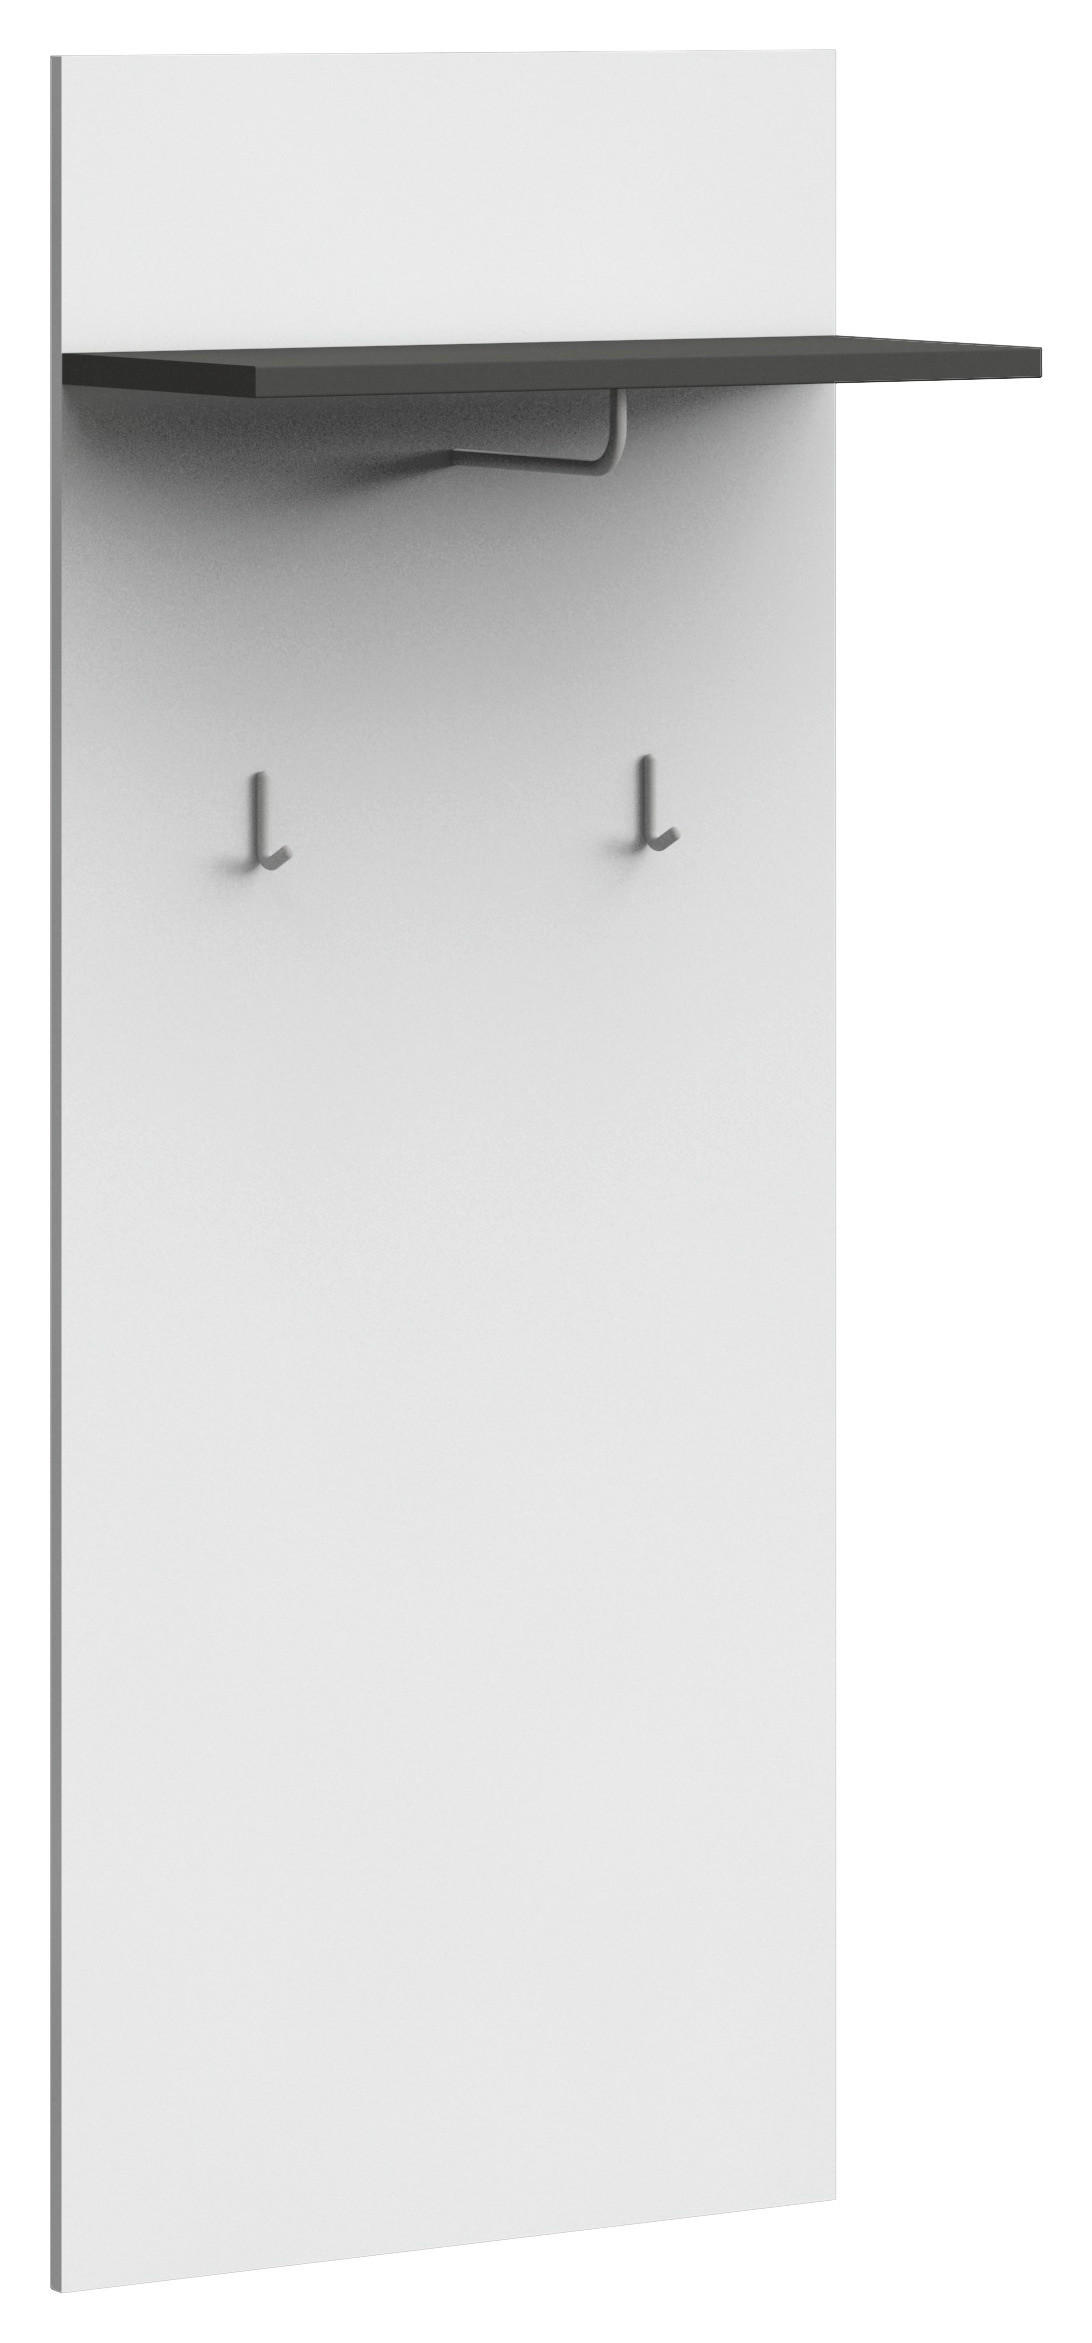 GARDEROBENPANEEL 65/157/29 cm  - Graphitfarben/Weiß, Basics, Holzwerkstoff (65/157/29cm) - Xora